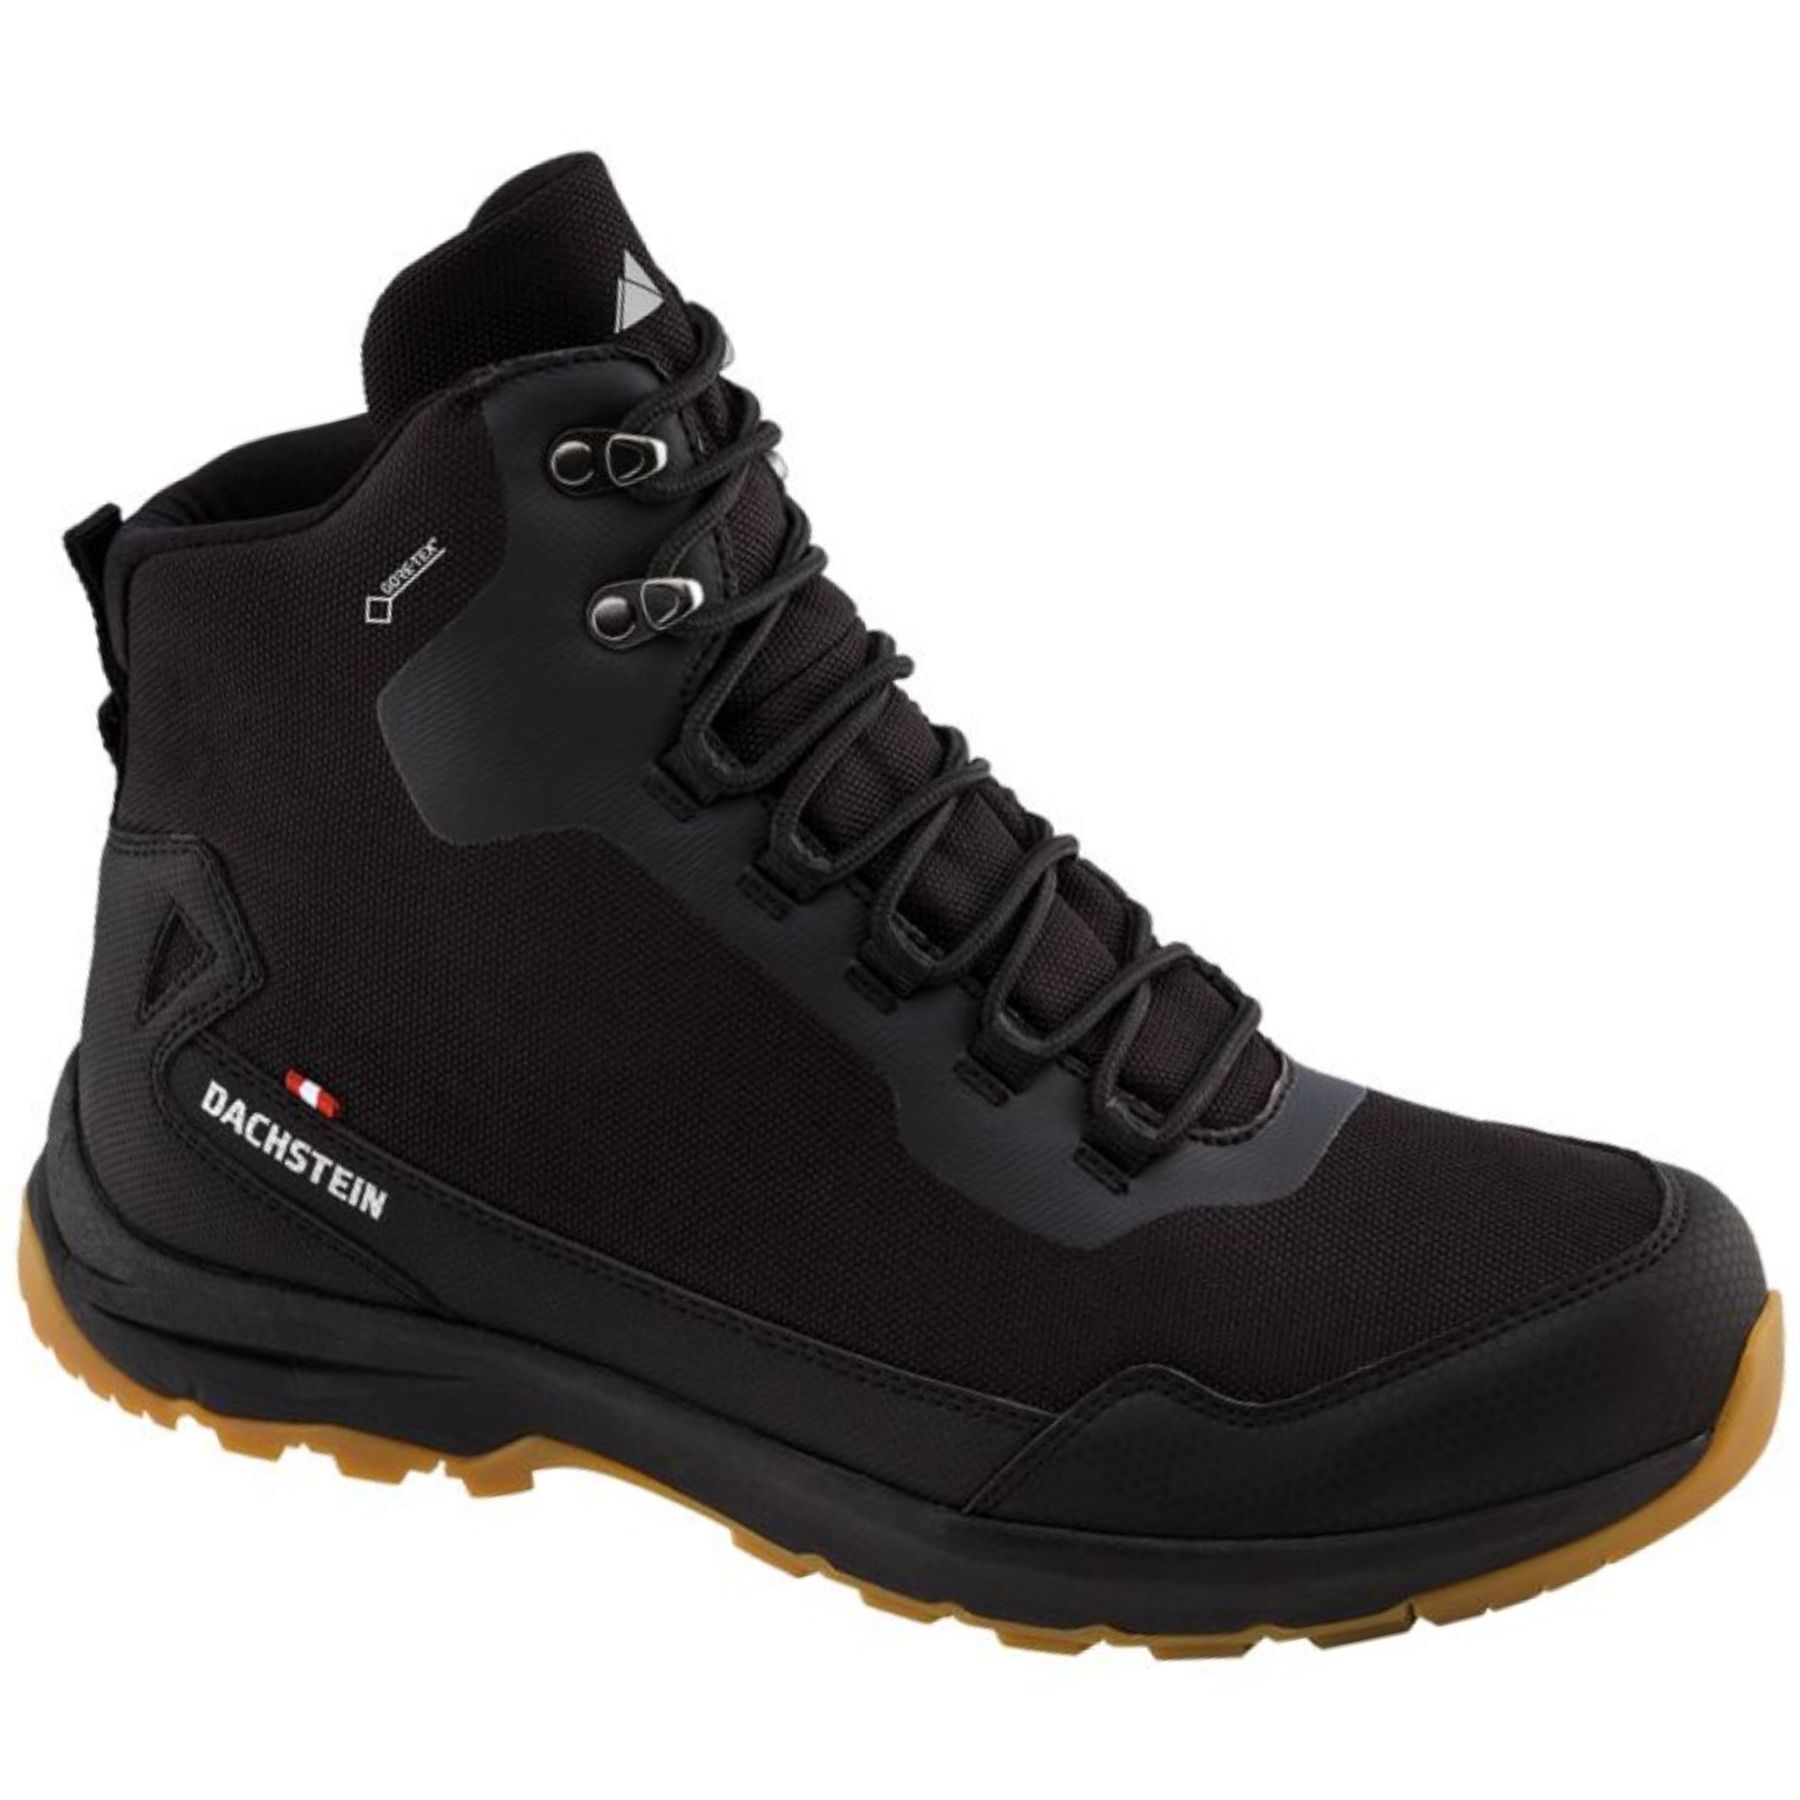 Dachstein Maverick GTX - Walking Boots - Men's